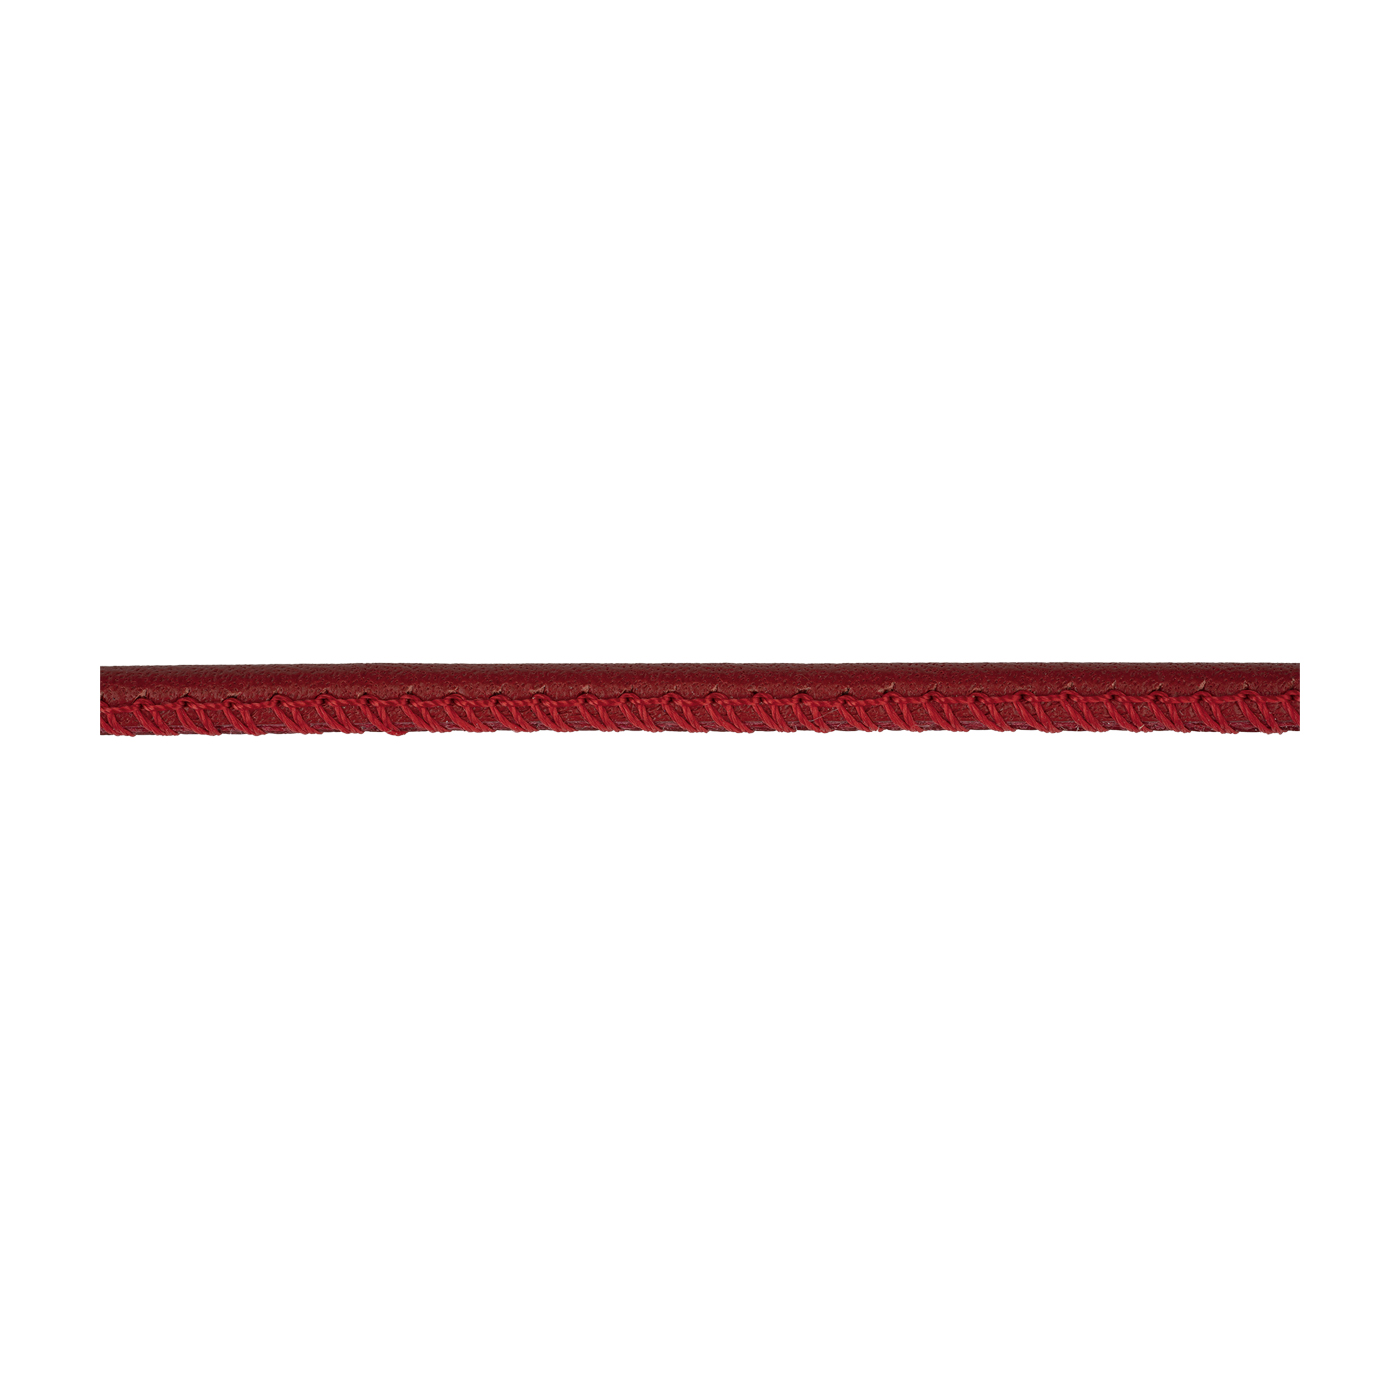 Lederband, rot, ø 5 mm, aus Kalbsleder - 1 m